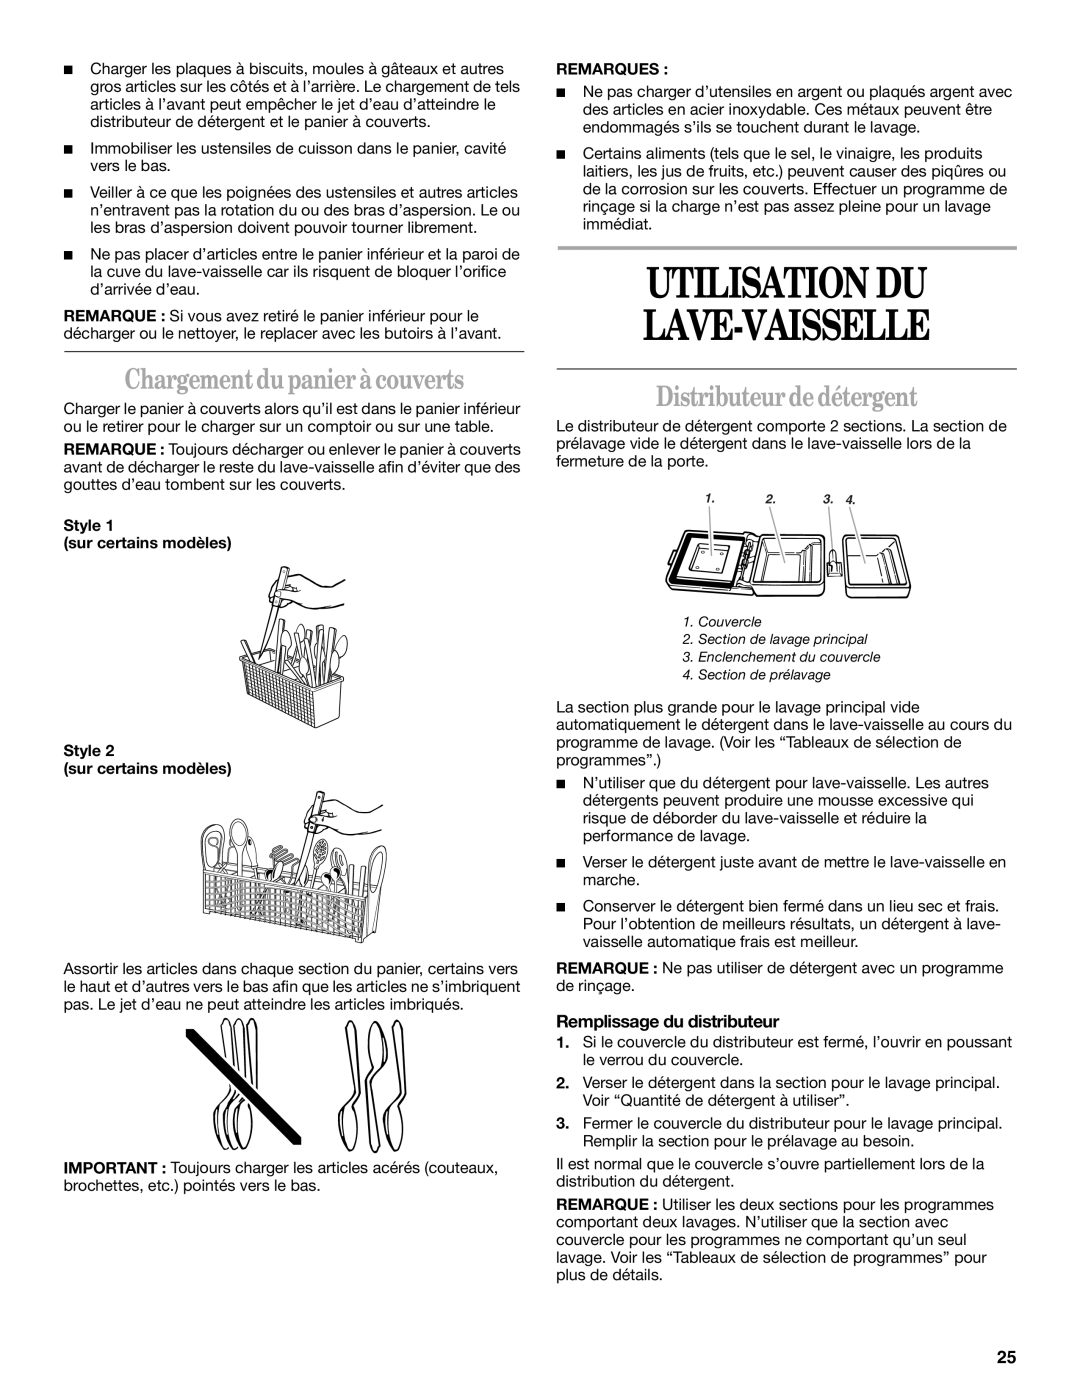 Whirlpool Series 810 manual Utilisation Du Lave-Vaisselle, Chargement du panier à couverts, Distributeur de détergent 